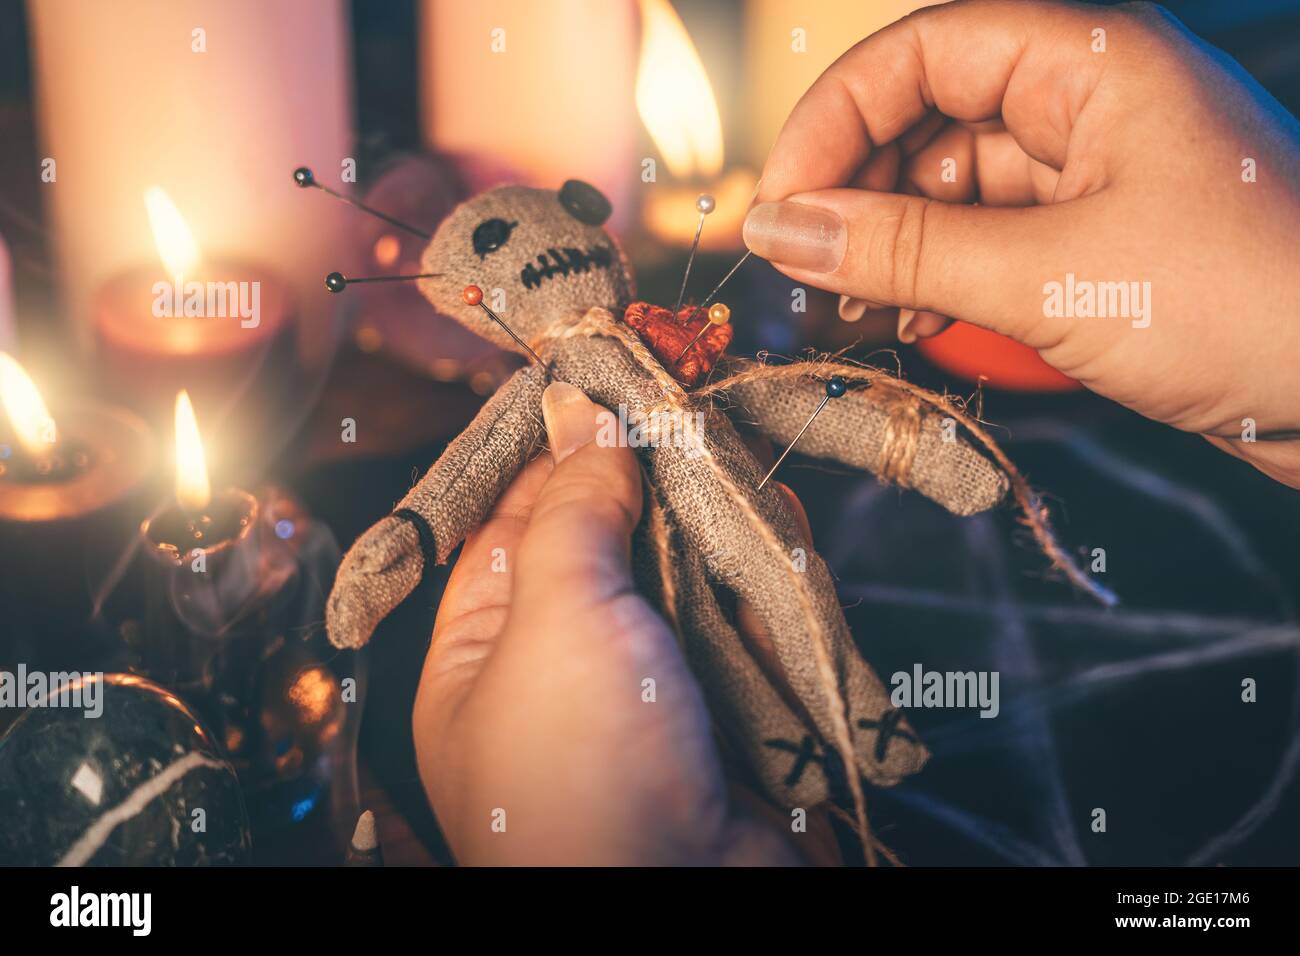 Le mani femminili attaccano gli aghi nel corpo della bambola voodoo RAG. La strega esegue una stregoneria sinistra. Concetto di rituali occulti, esoterici e mistici. Foto Stock